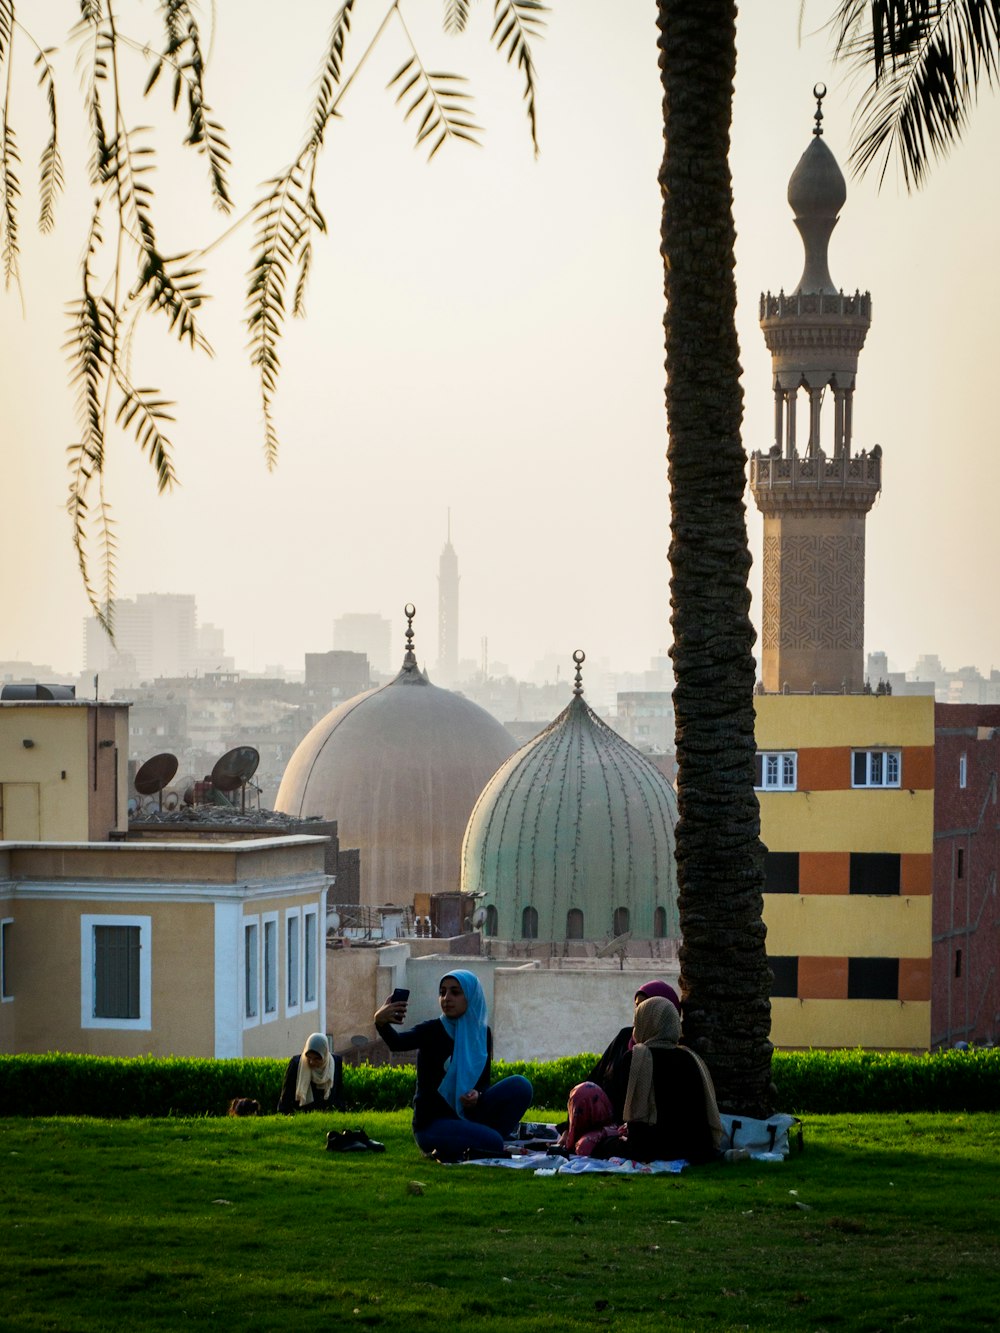 Personnes assises sur l’herbe près d’une mosquée